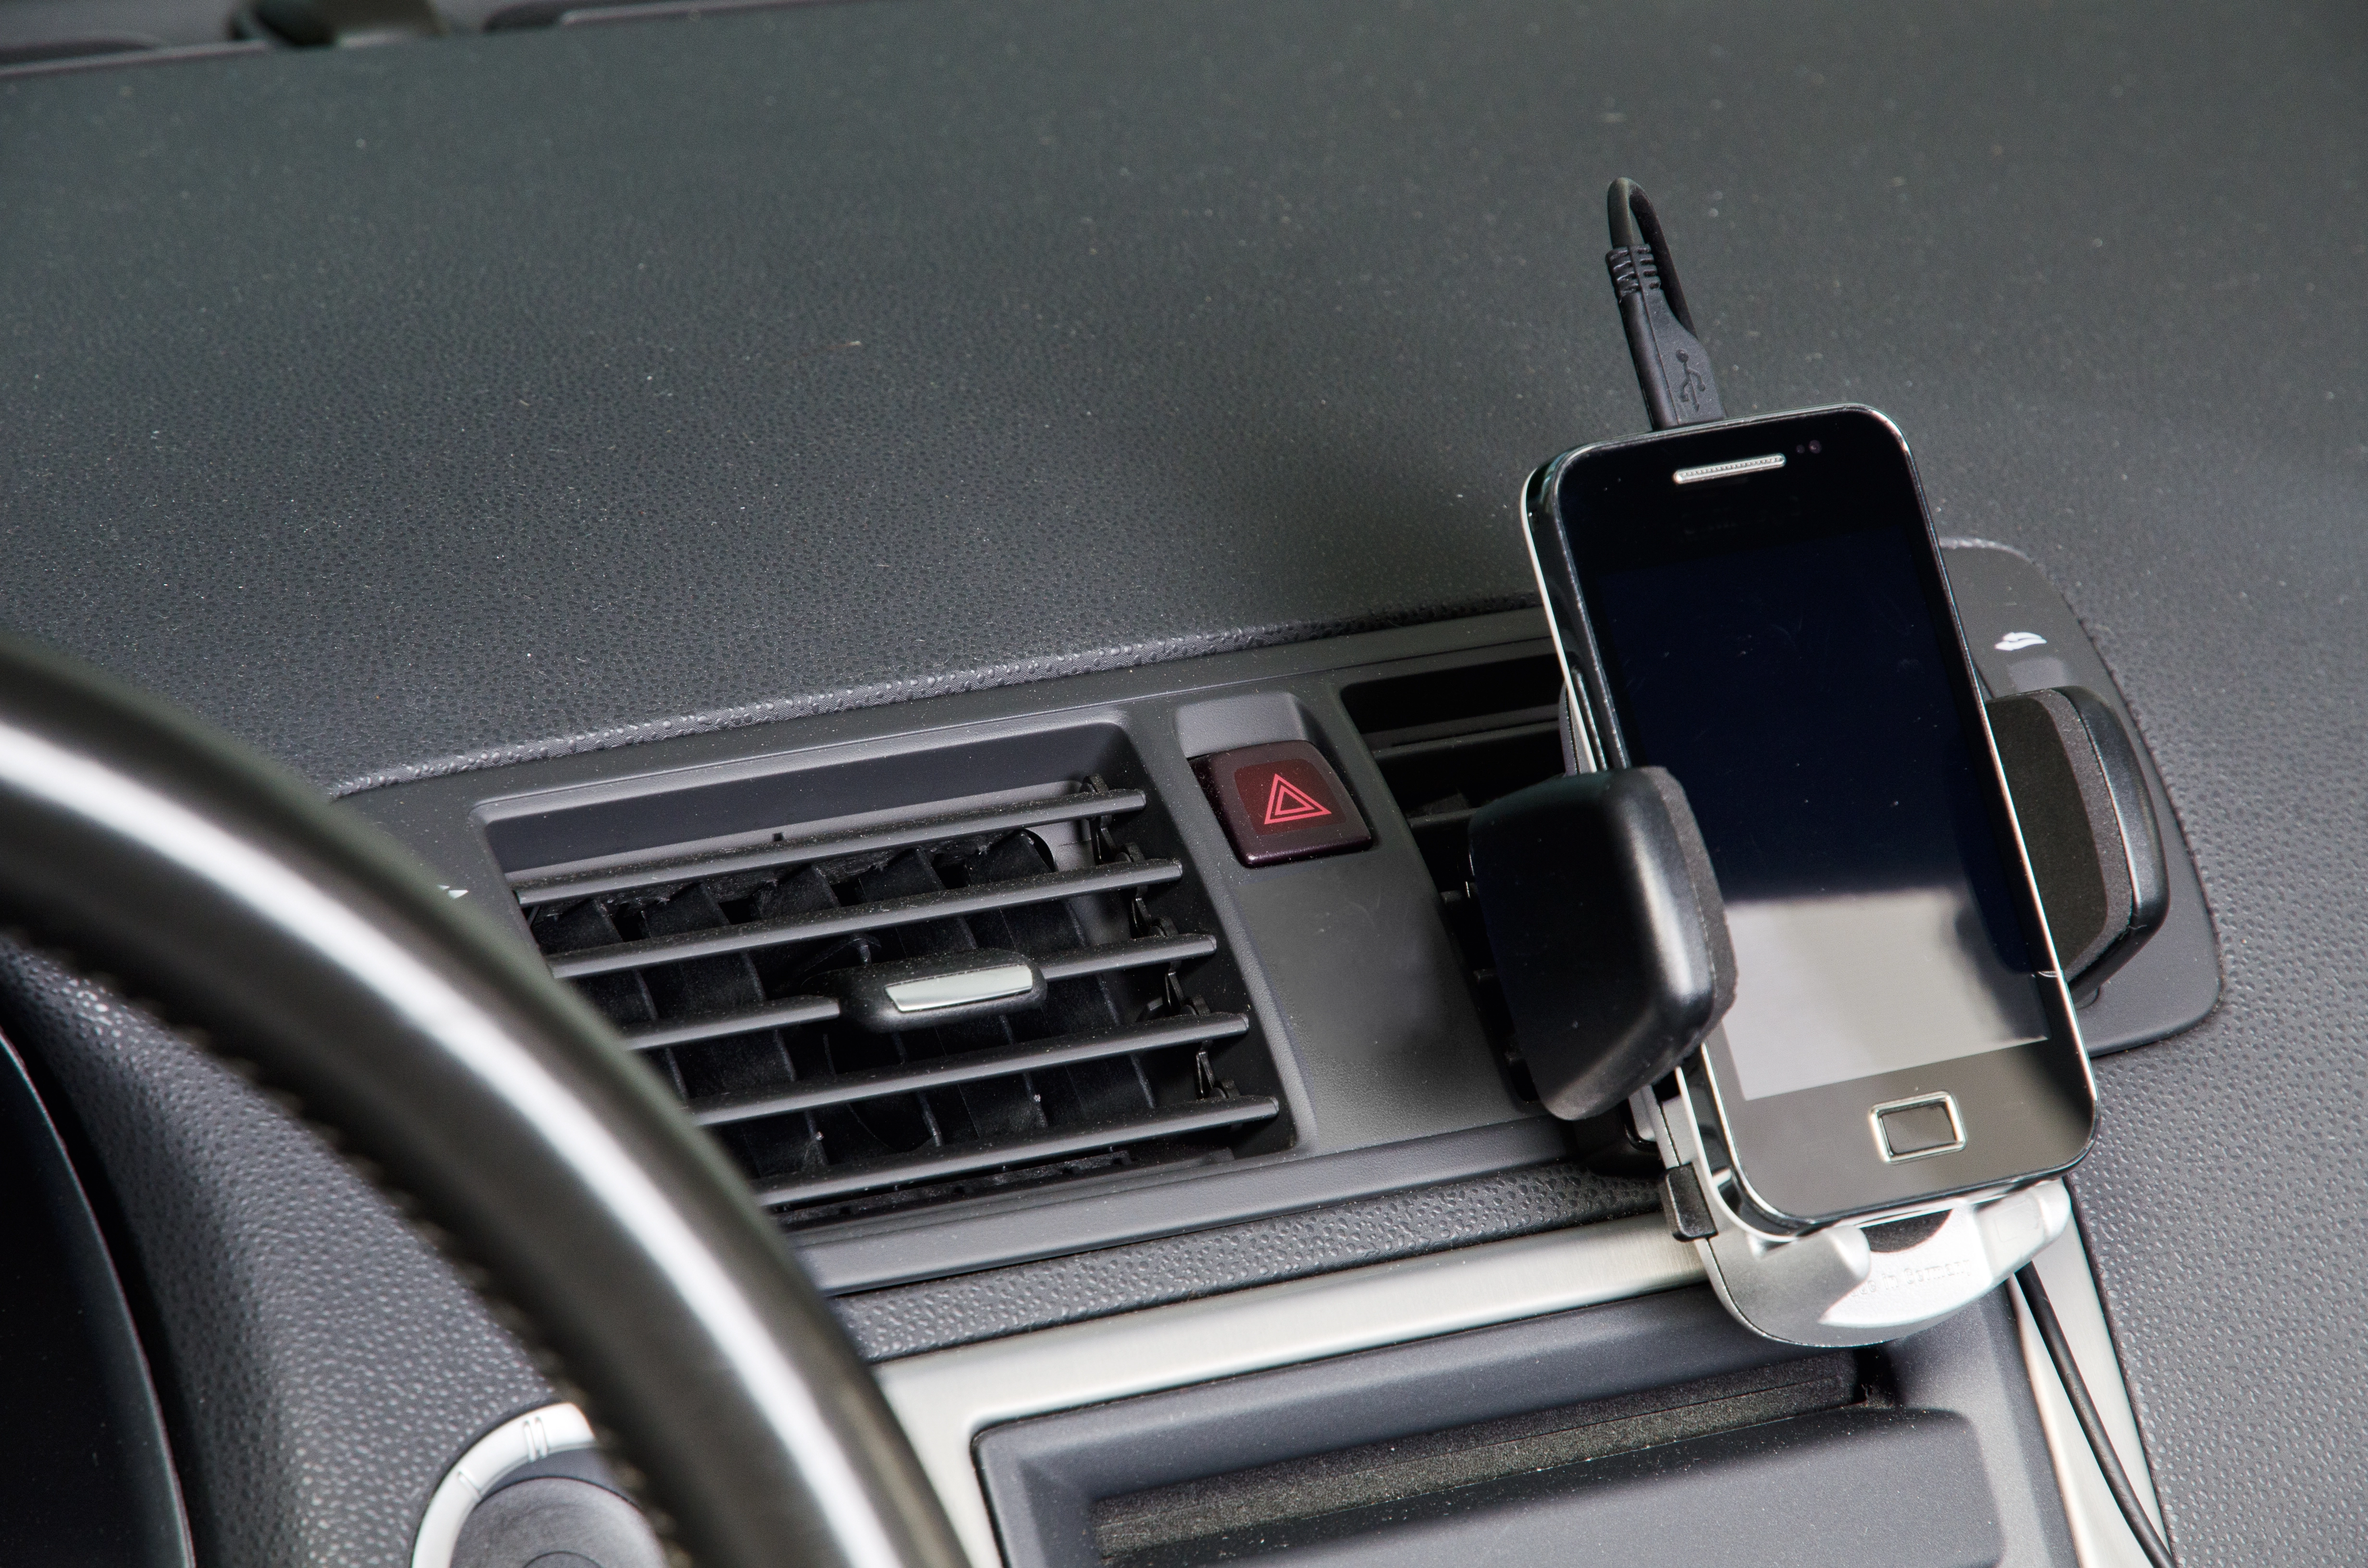 Hama Smartphone-Halter mit Saugnapf Geräte mit Breite von 5,5 8,5 cm  Schwarz kaufen bei OBI